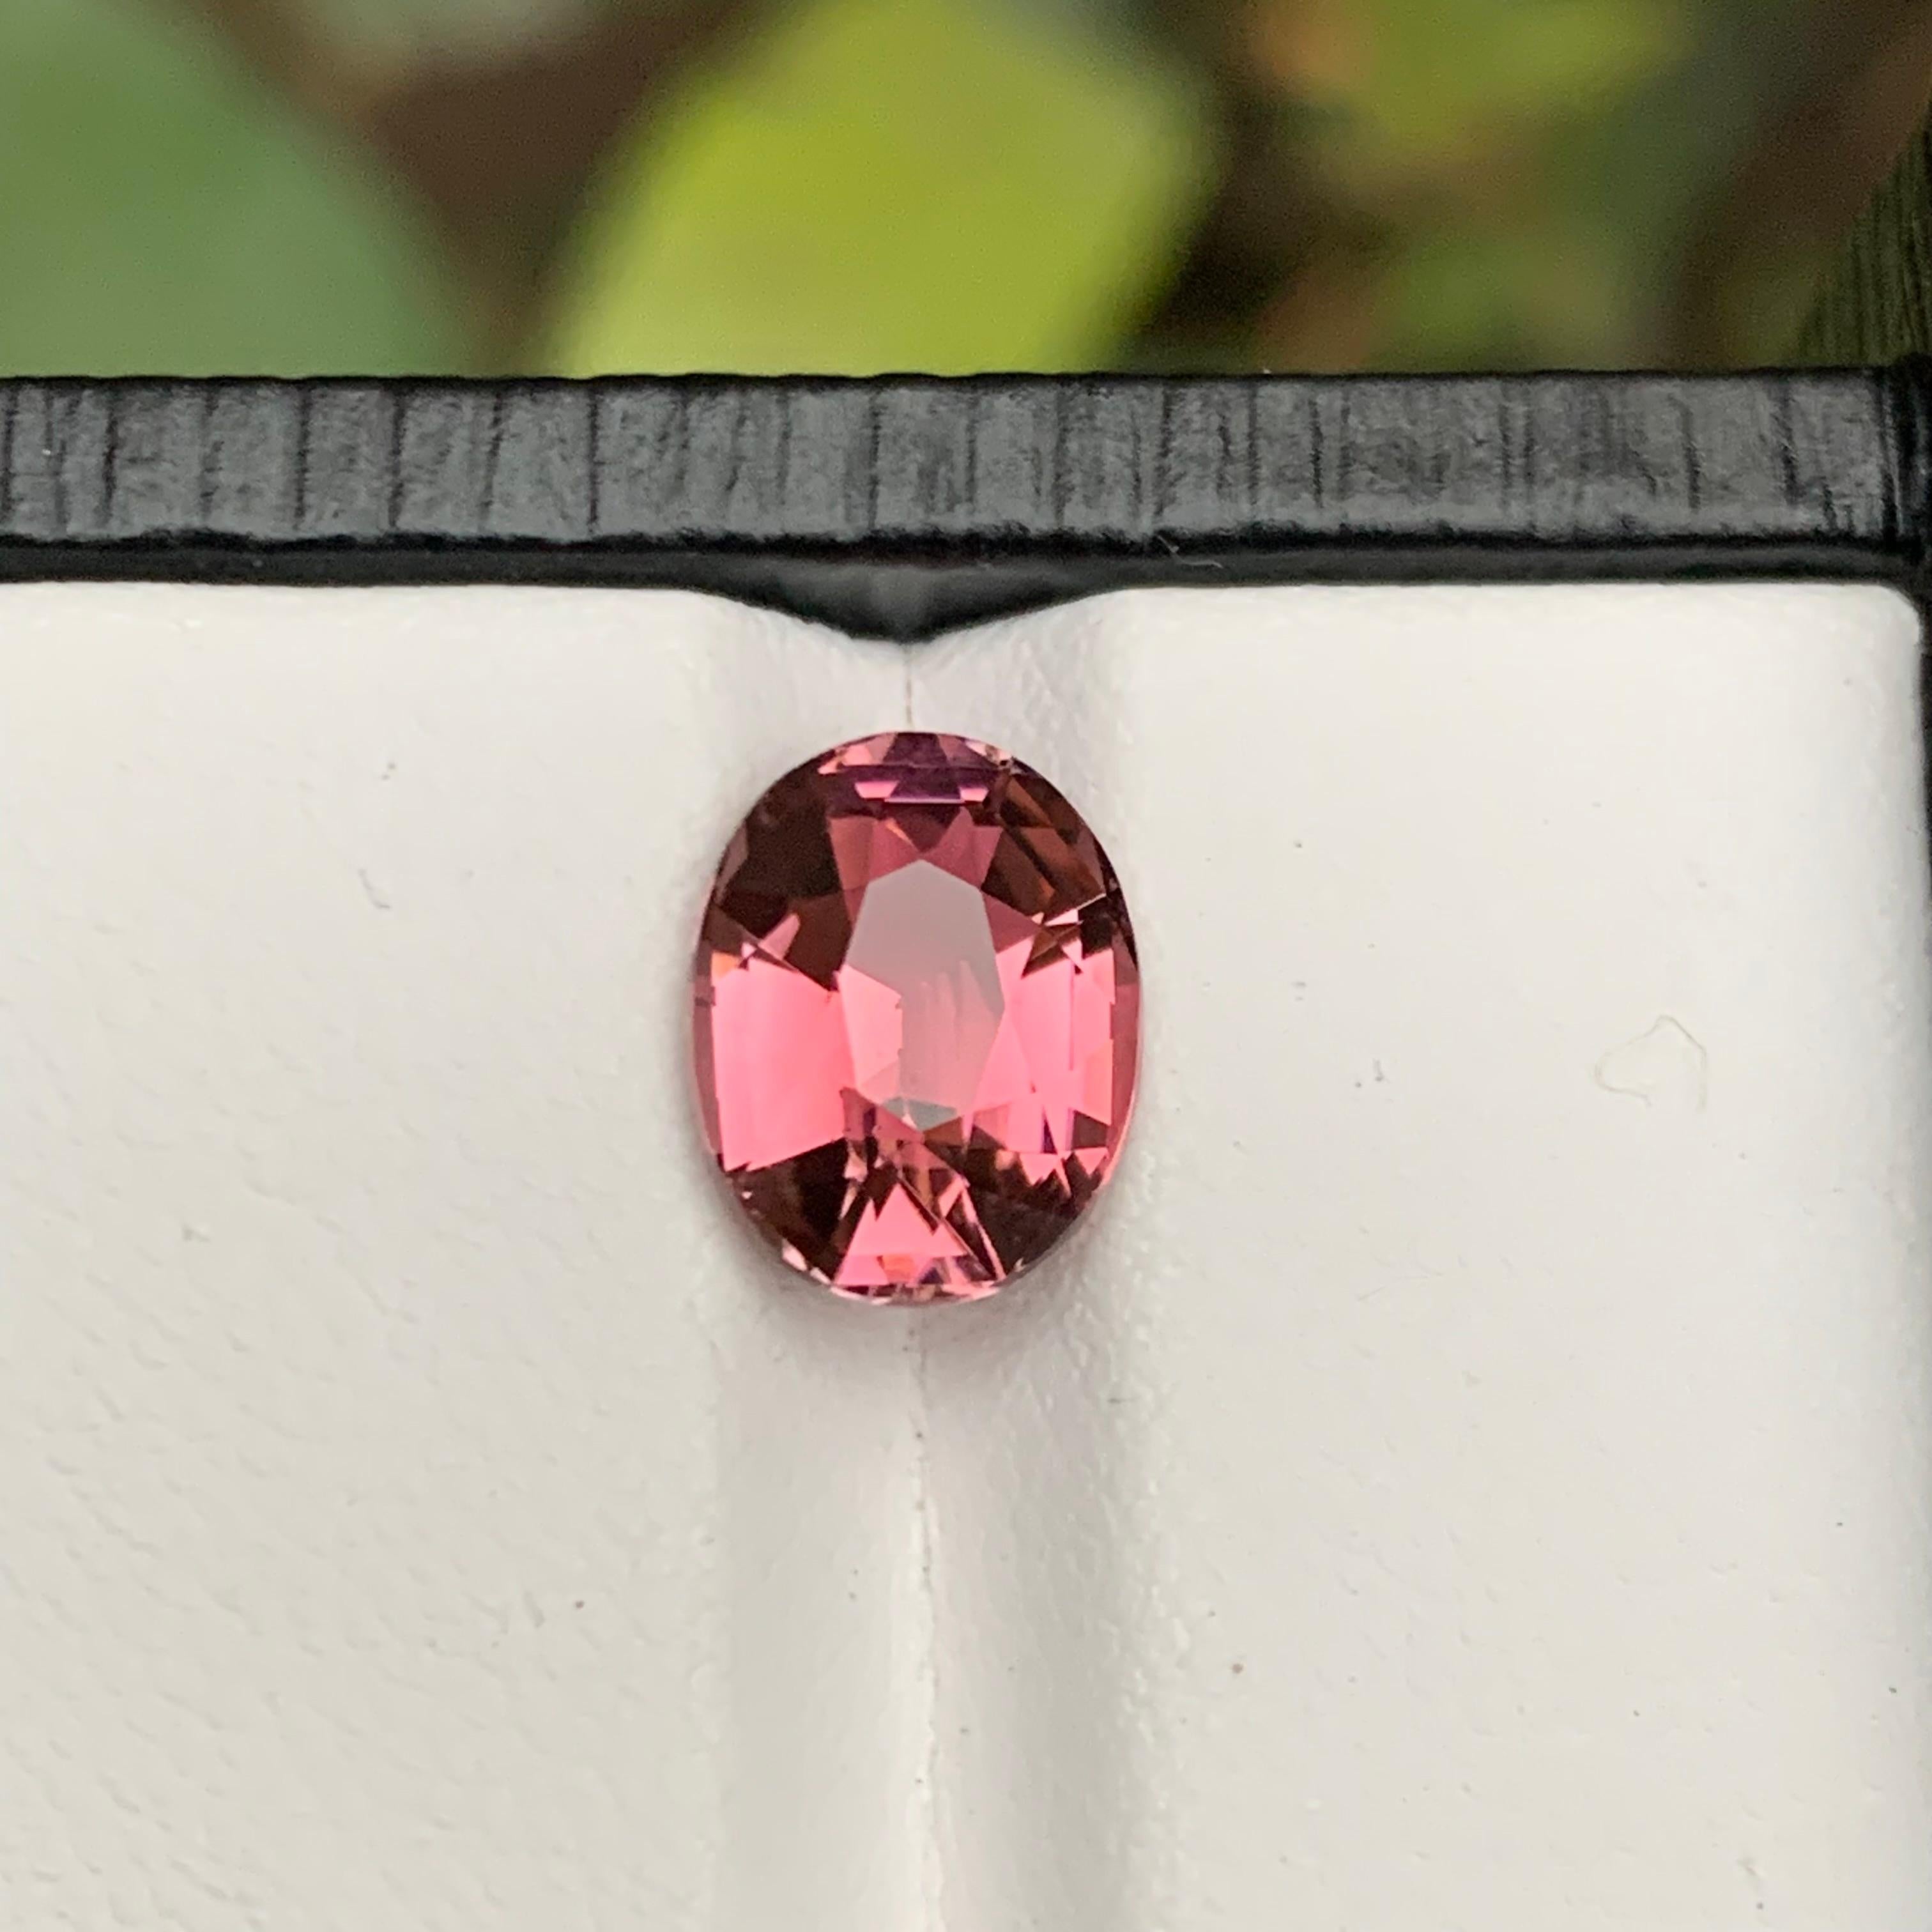 Nous vous présentons notre tourmaline naturelle rose rare taille coussin, une pierre précieuse éblouissante pesant 2,75 carats. Méticuleusement travaillée pour présenter un éclat et une clarté excellents, cette pièce rare est parfaite pour divers